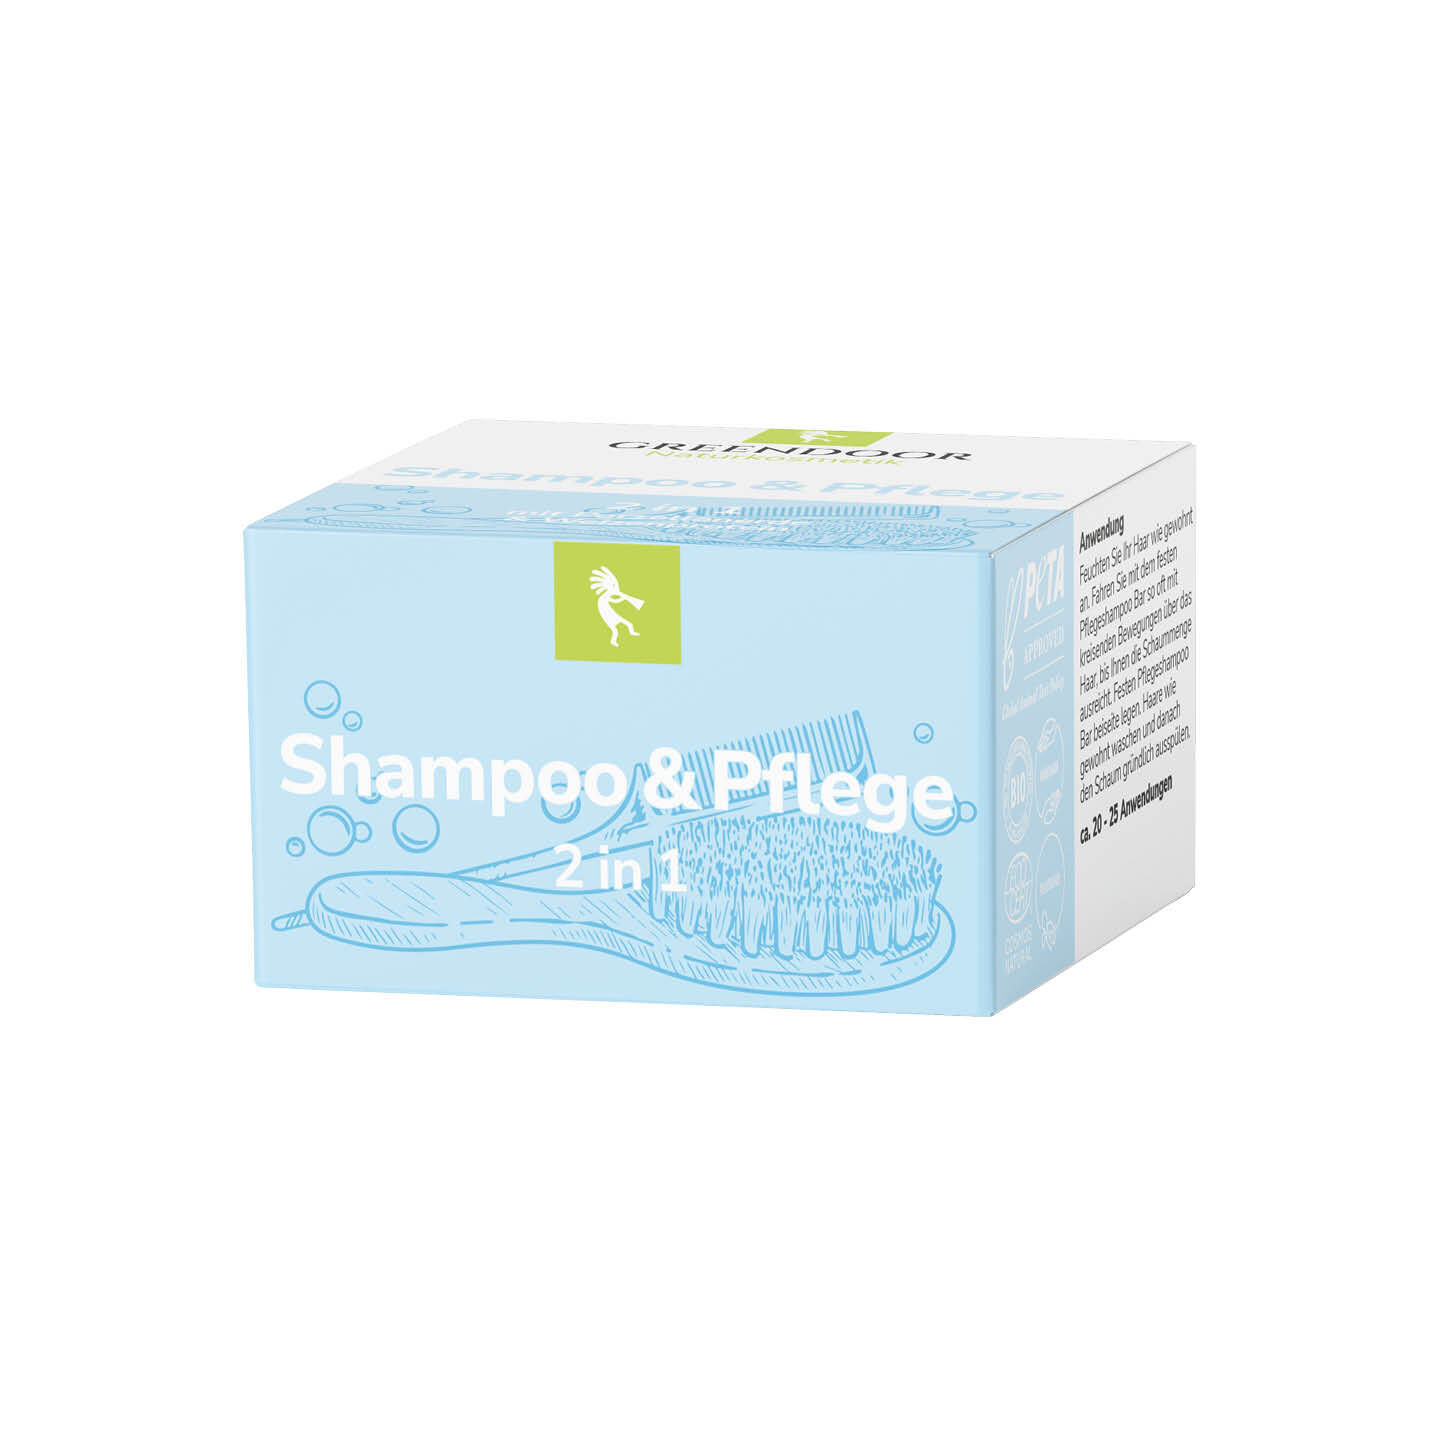 2 in 1 Shampoo und Pflege